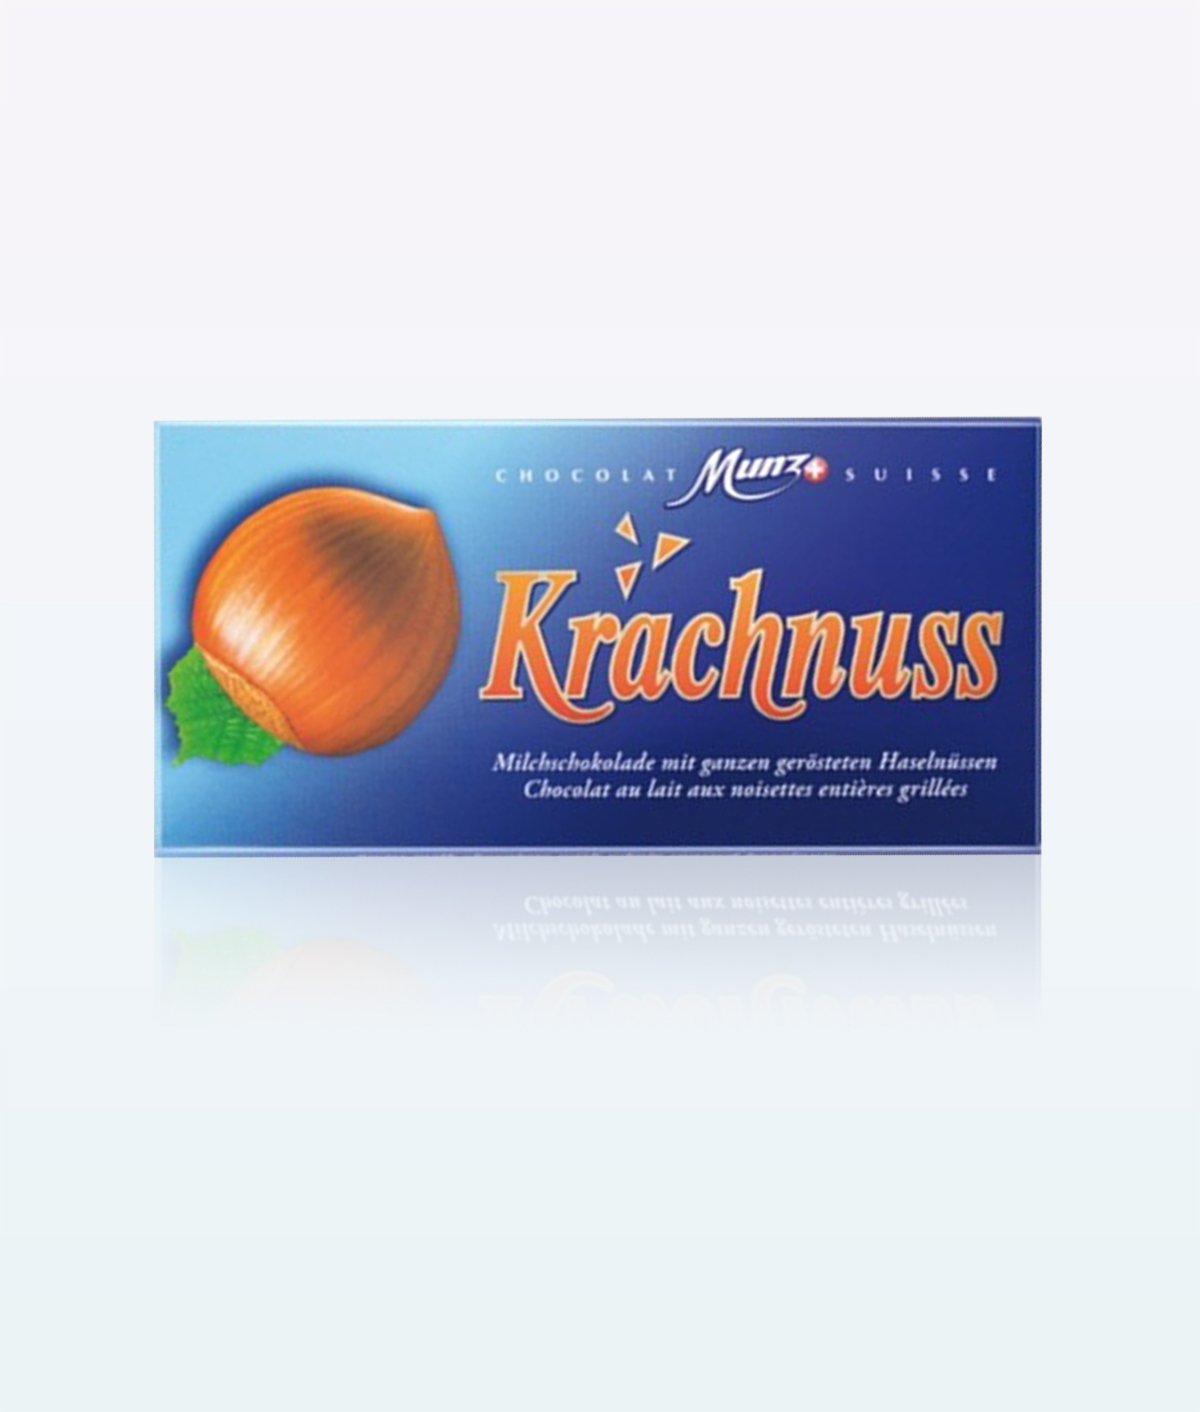 munz-krachnuss-chocolate